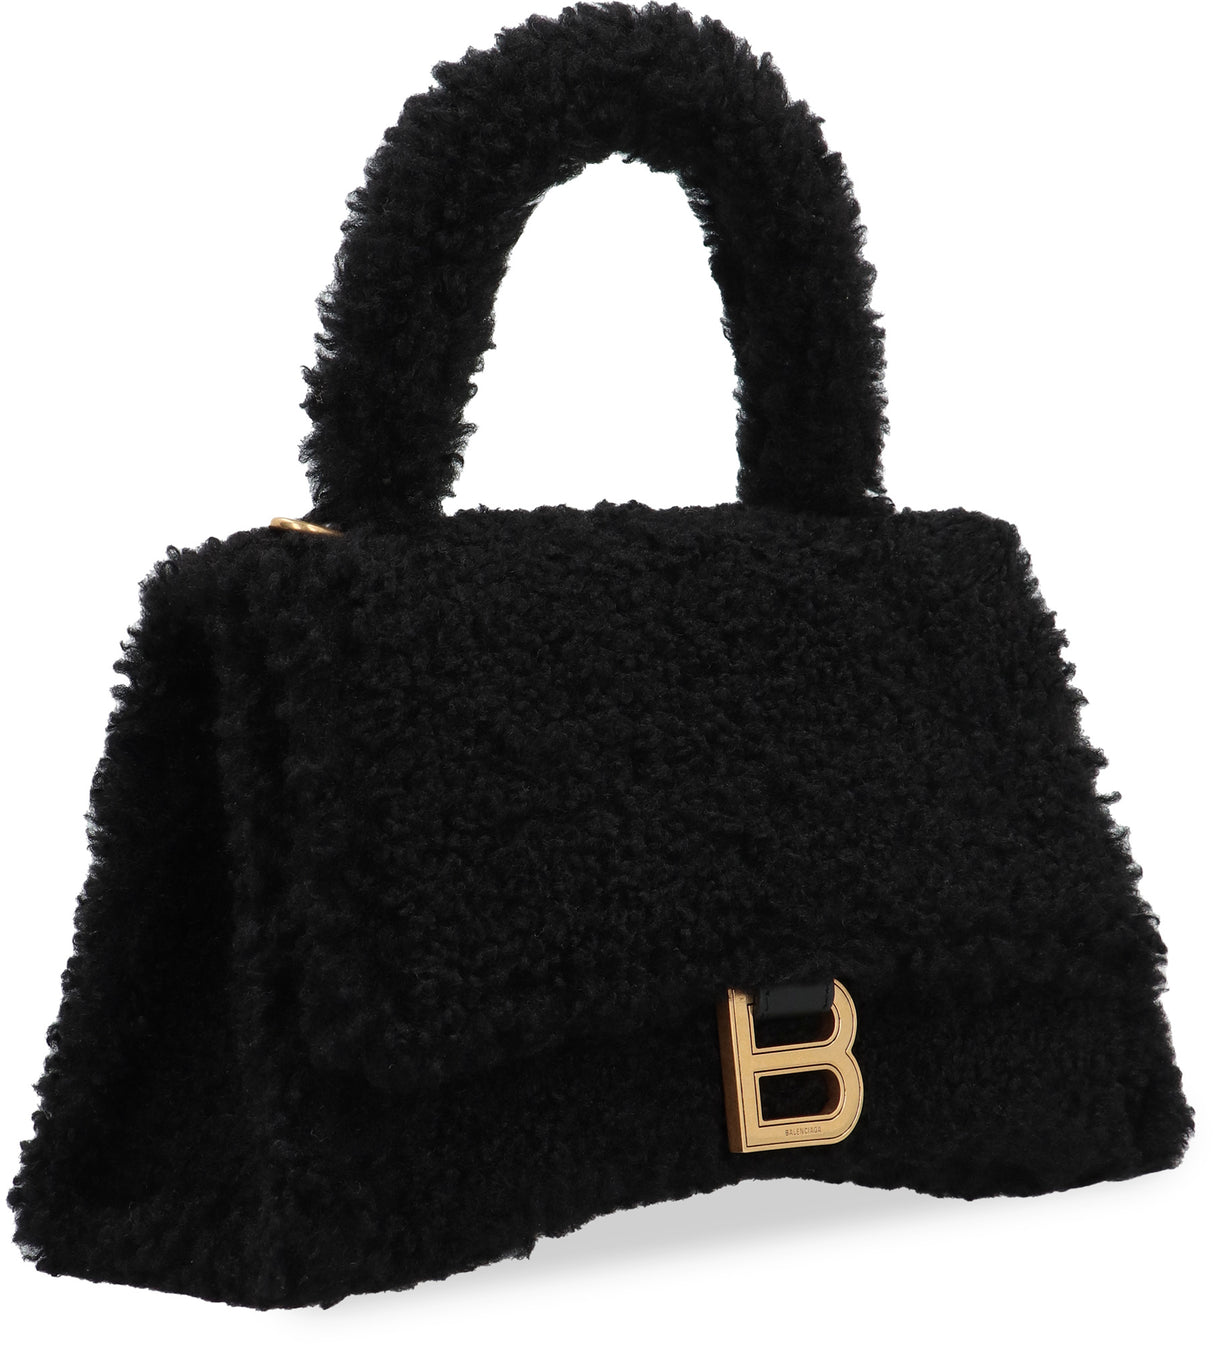 حقيبة يد نسائية باللون الأسود بتصميم ساعة الرمل وخامة شيرلينج المقلدة